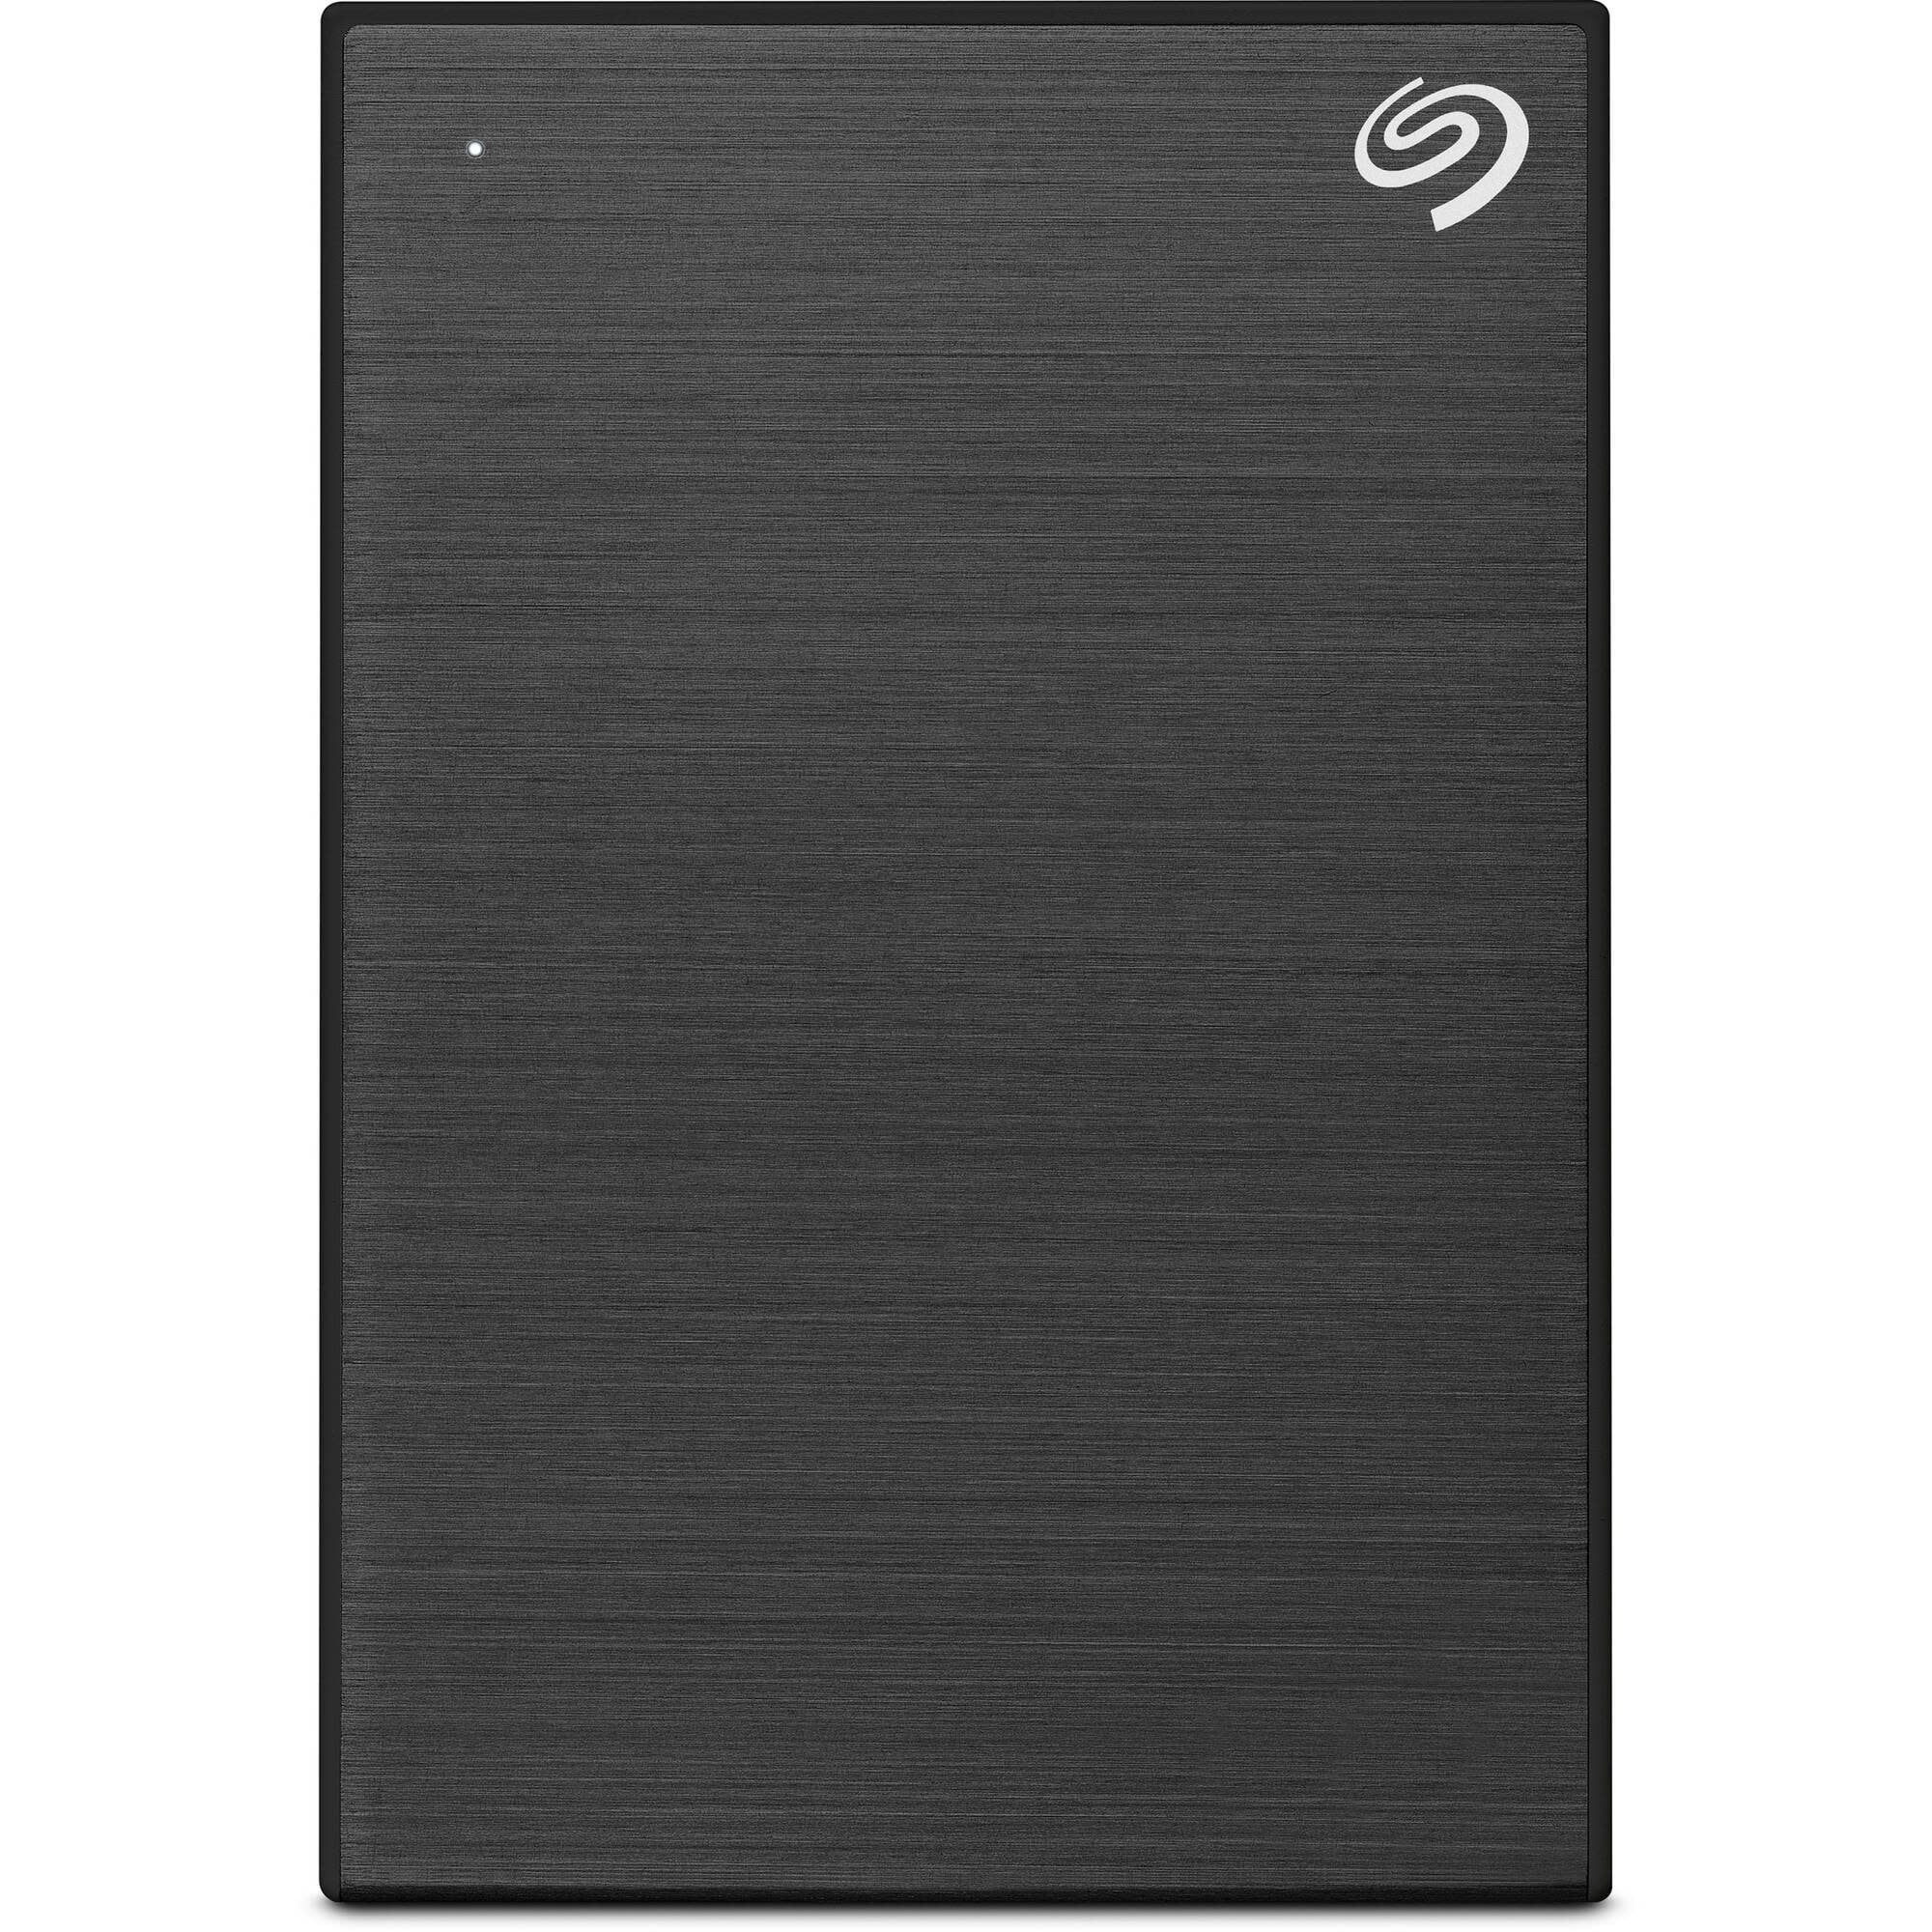 Seagate One Touch 5TB External Hard Drive Black USB 3.0 (STKC5000400) | Walmart (US)